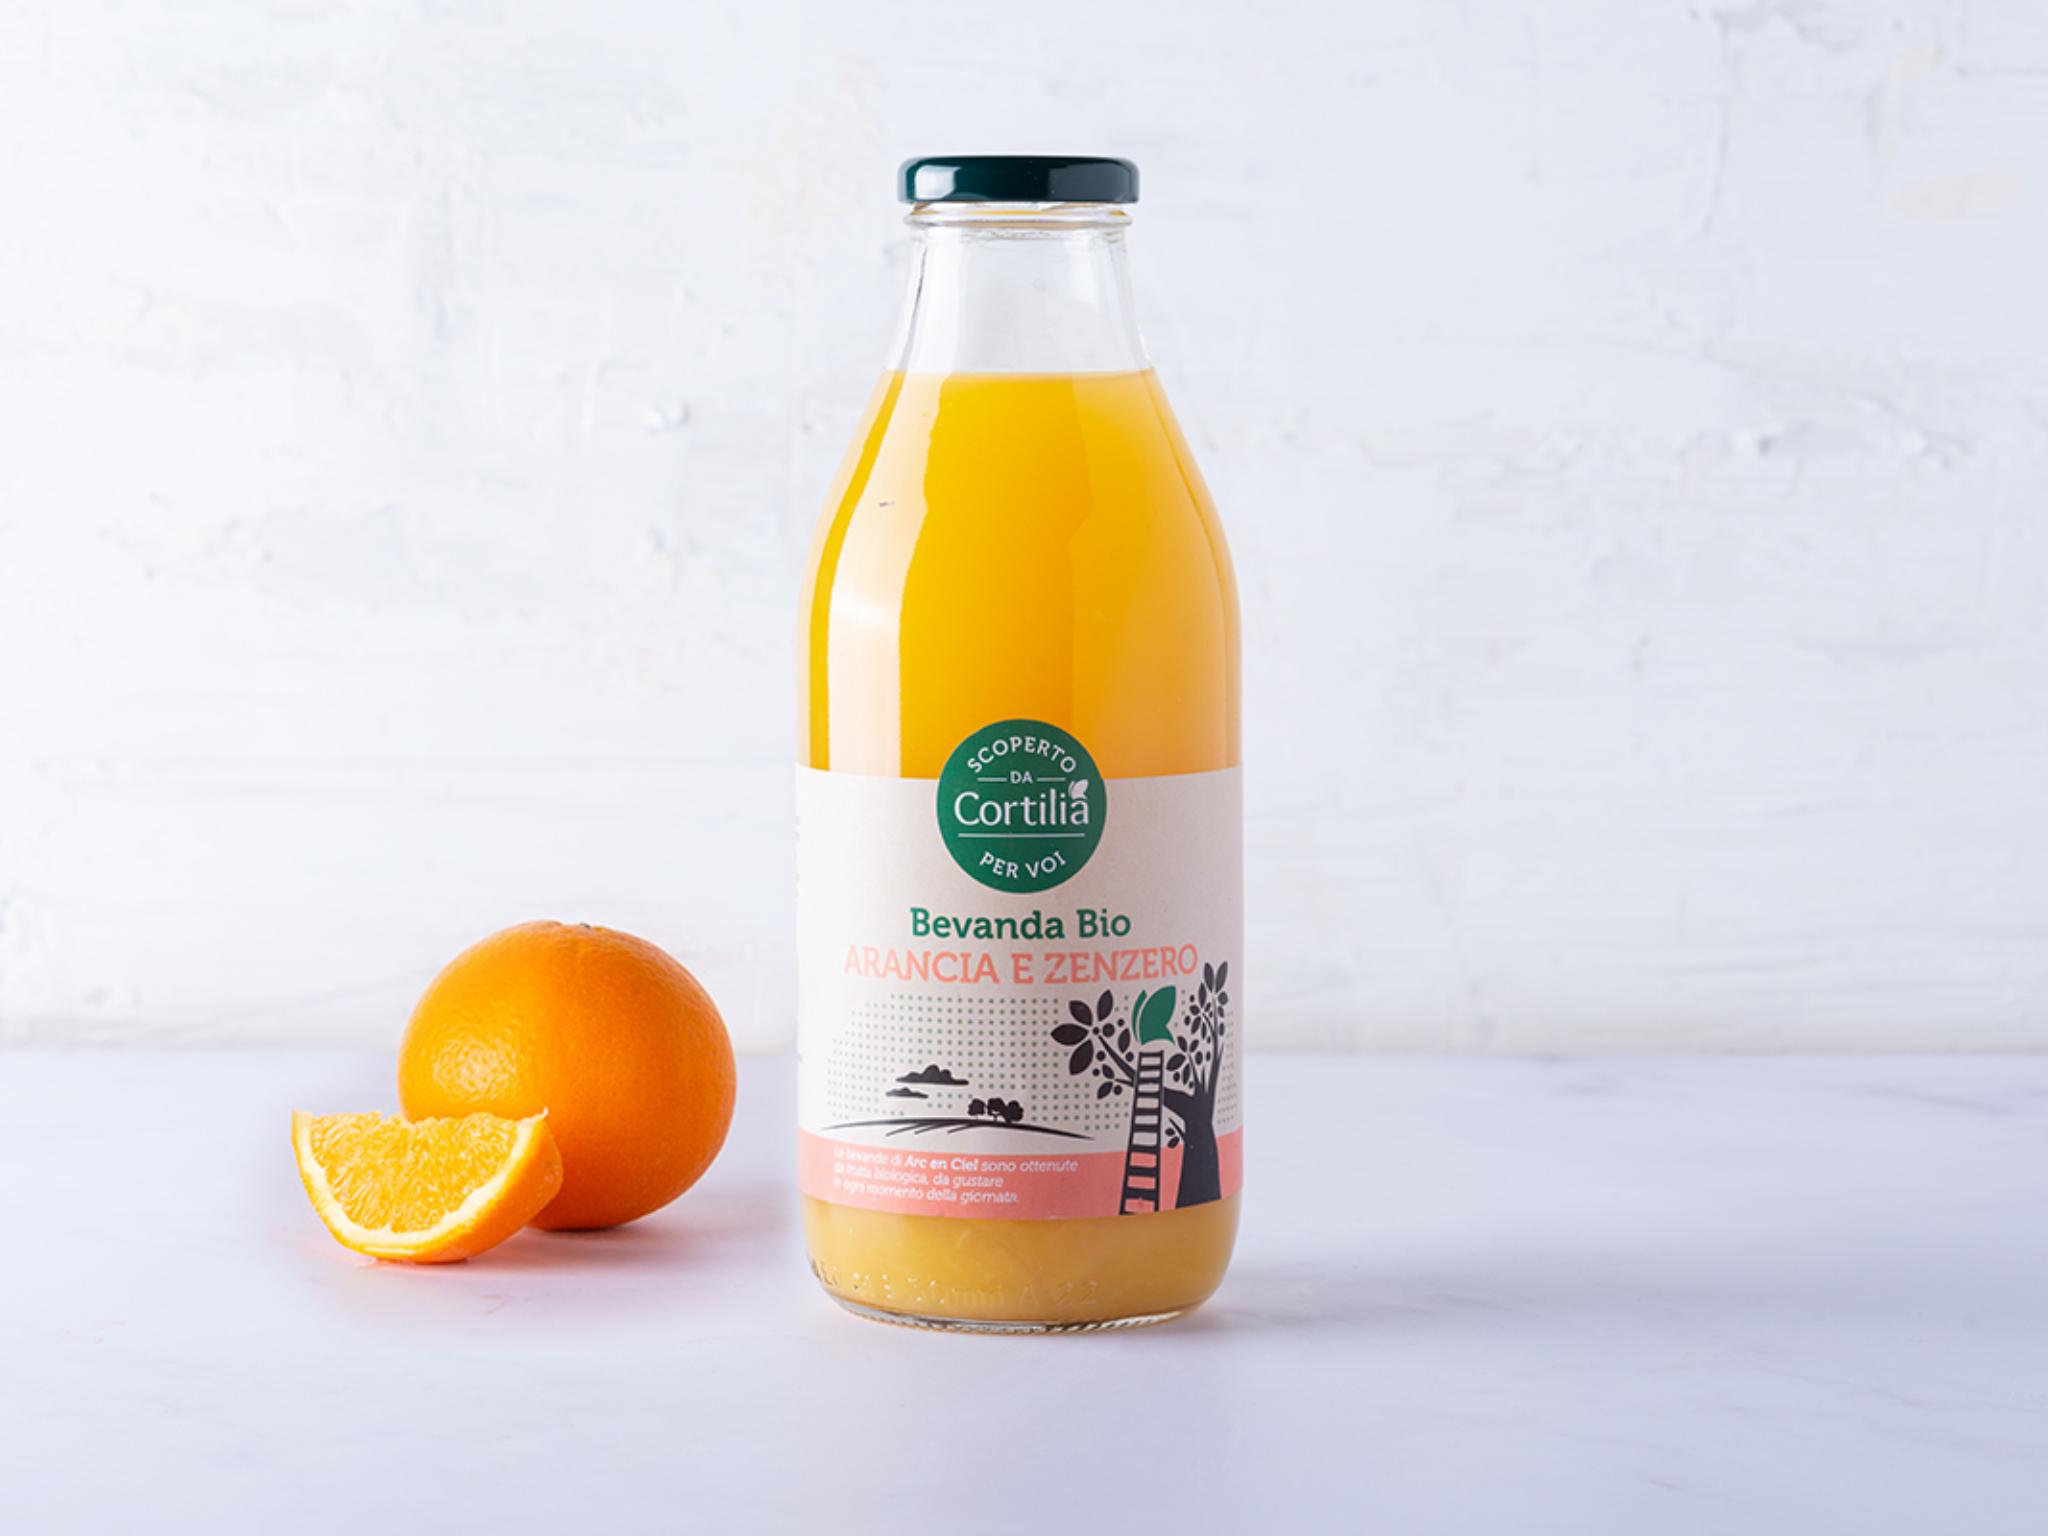 6 Bevanda arancia, zenzero e mela BIO